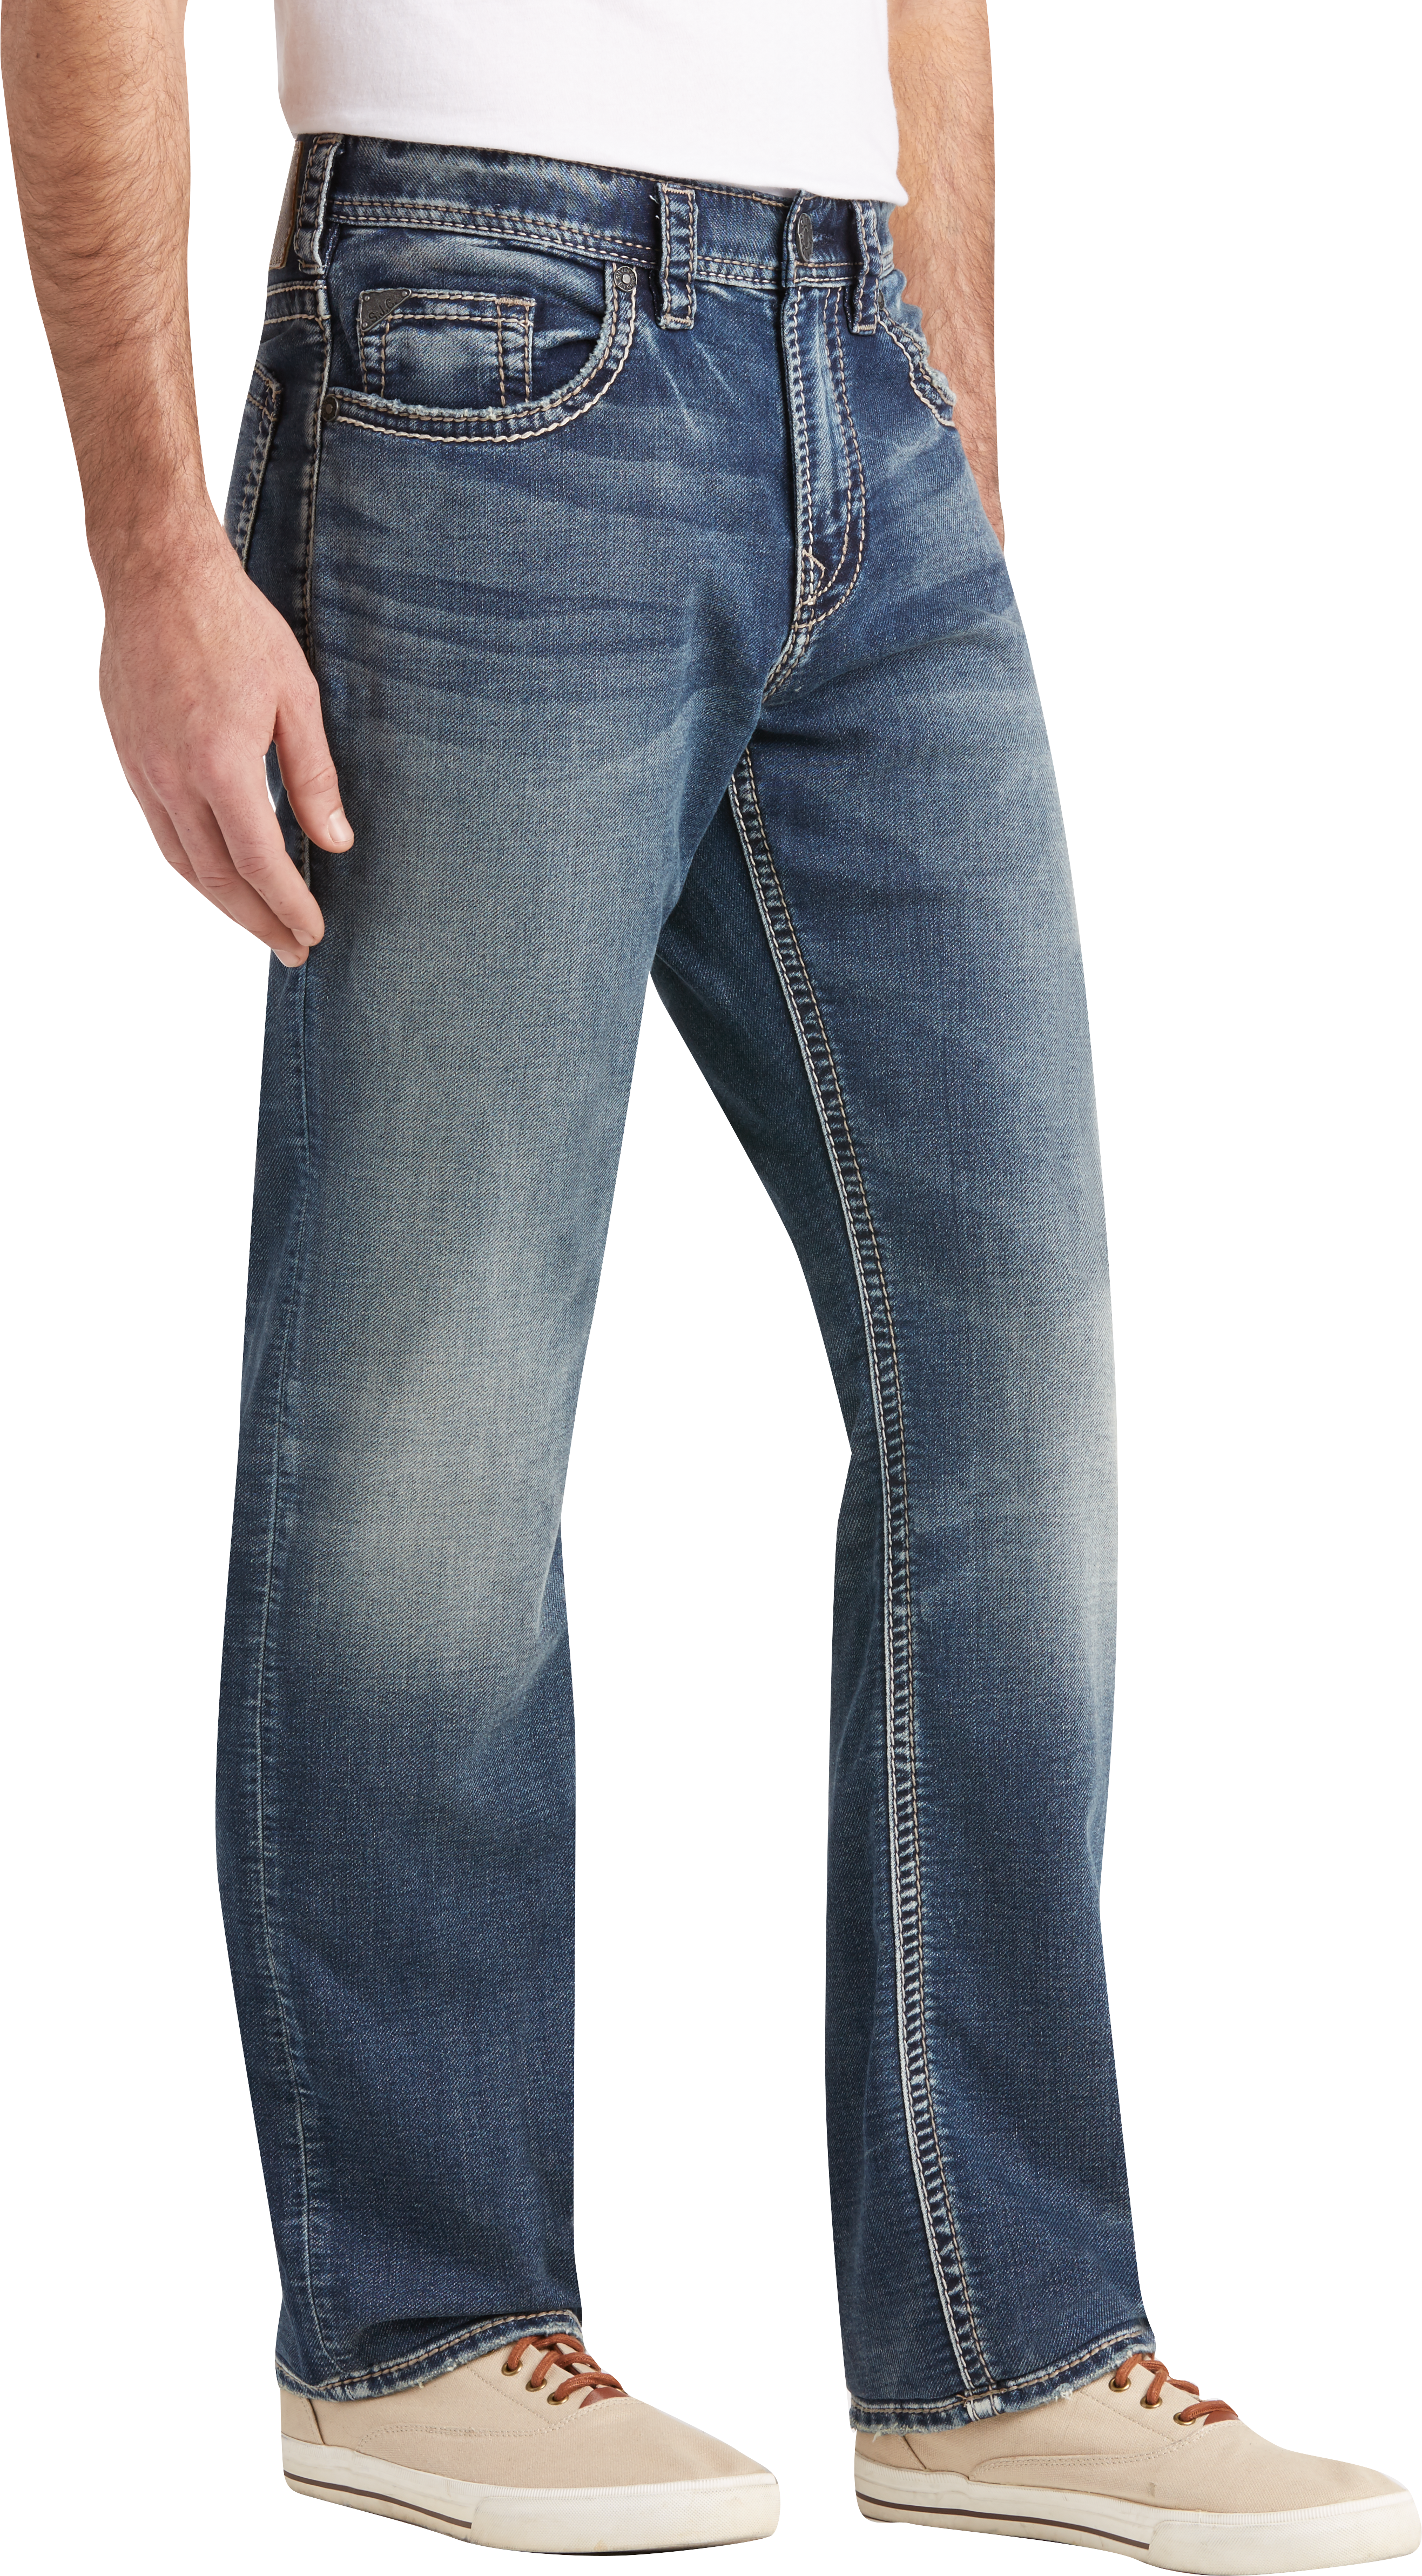 men's wearhouse jeans sale